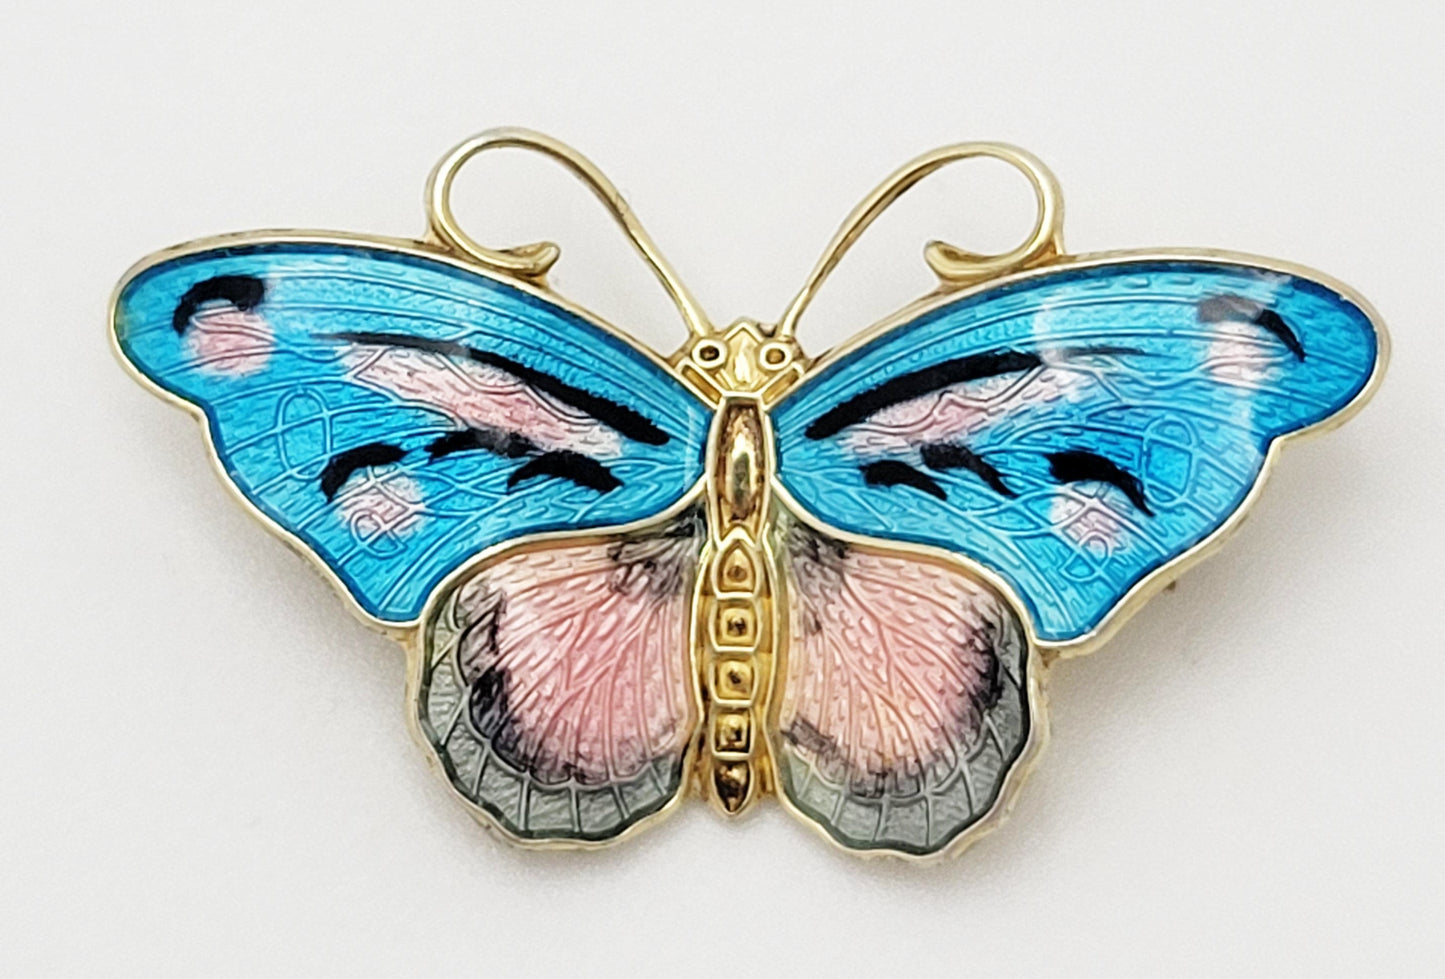 Hroar Prydz Jewelry Rare Jens E Jensen Hroar Prydz Norway Sterling Enamel Butterfly Brooch 20/30s